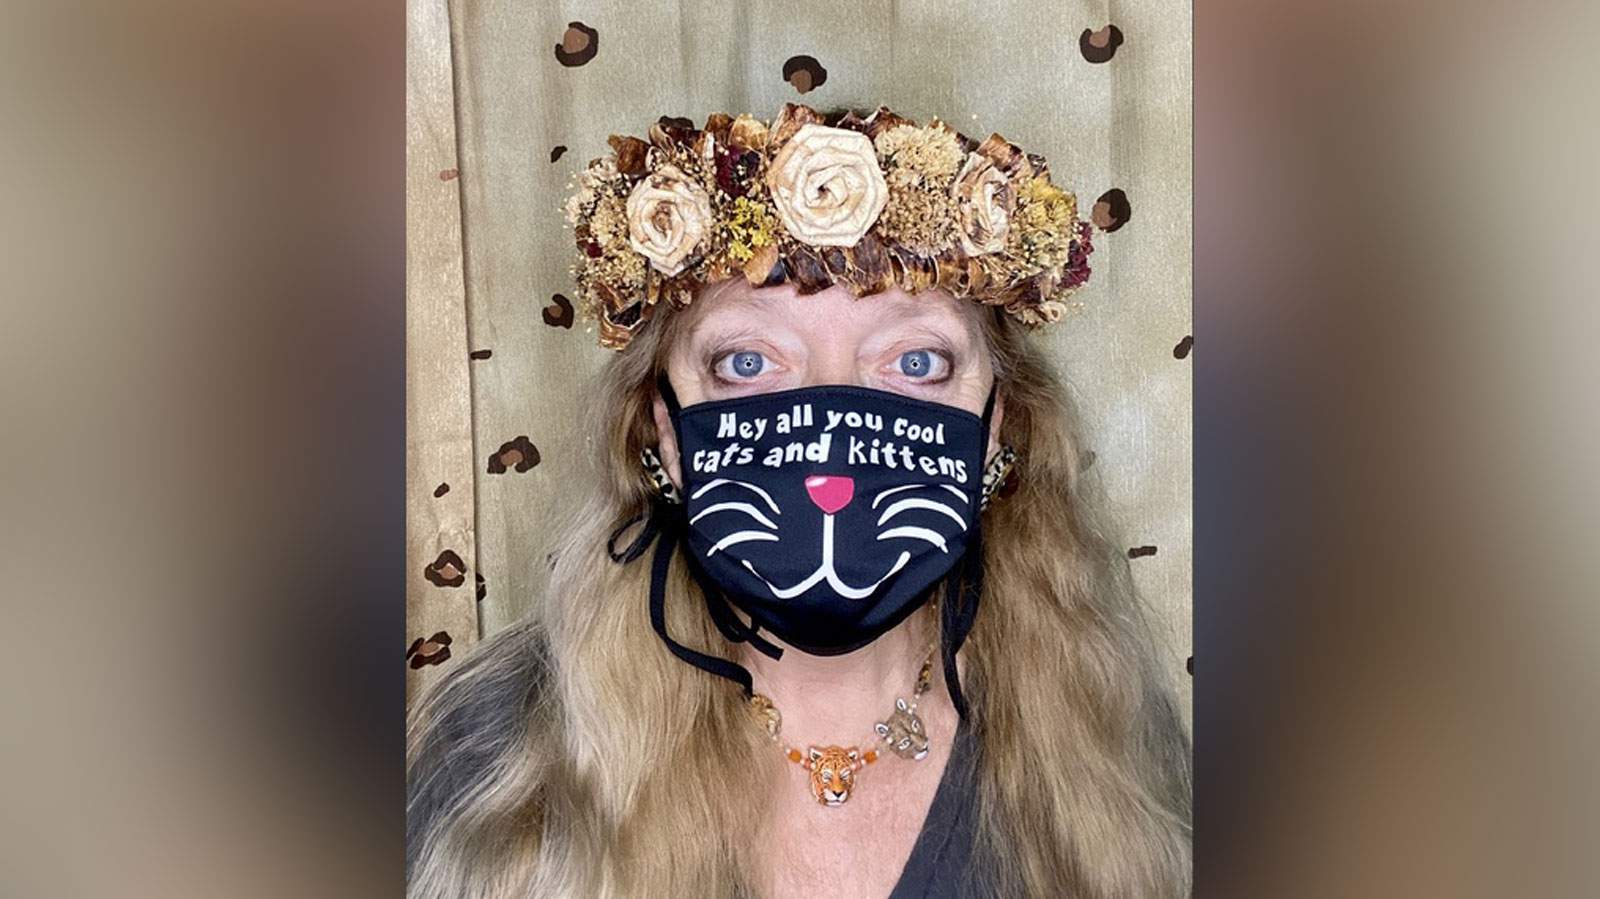 Carole Baskin of ‘Tiger King’ fame is selling leopard print face masks